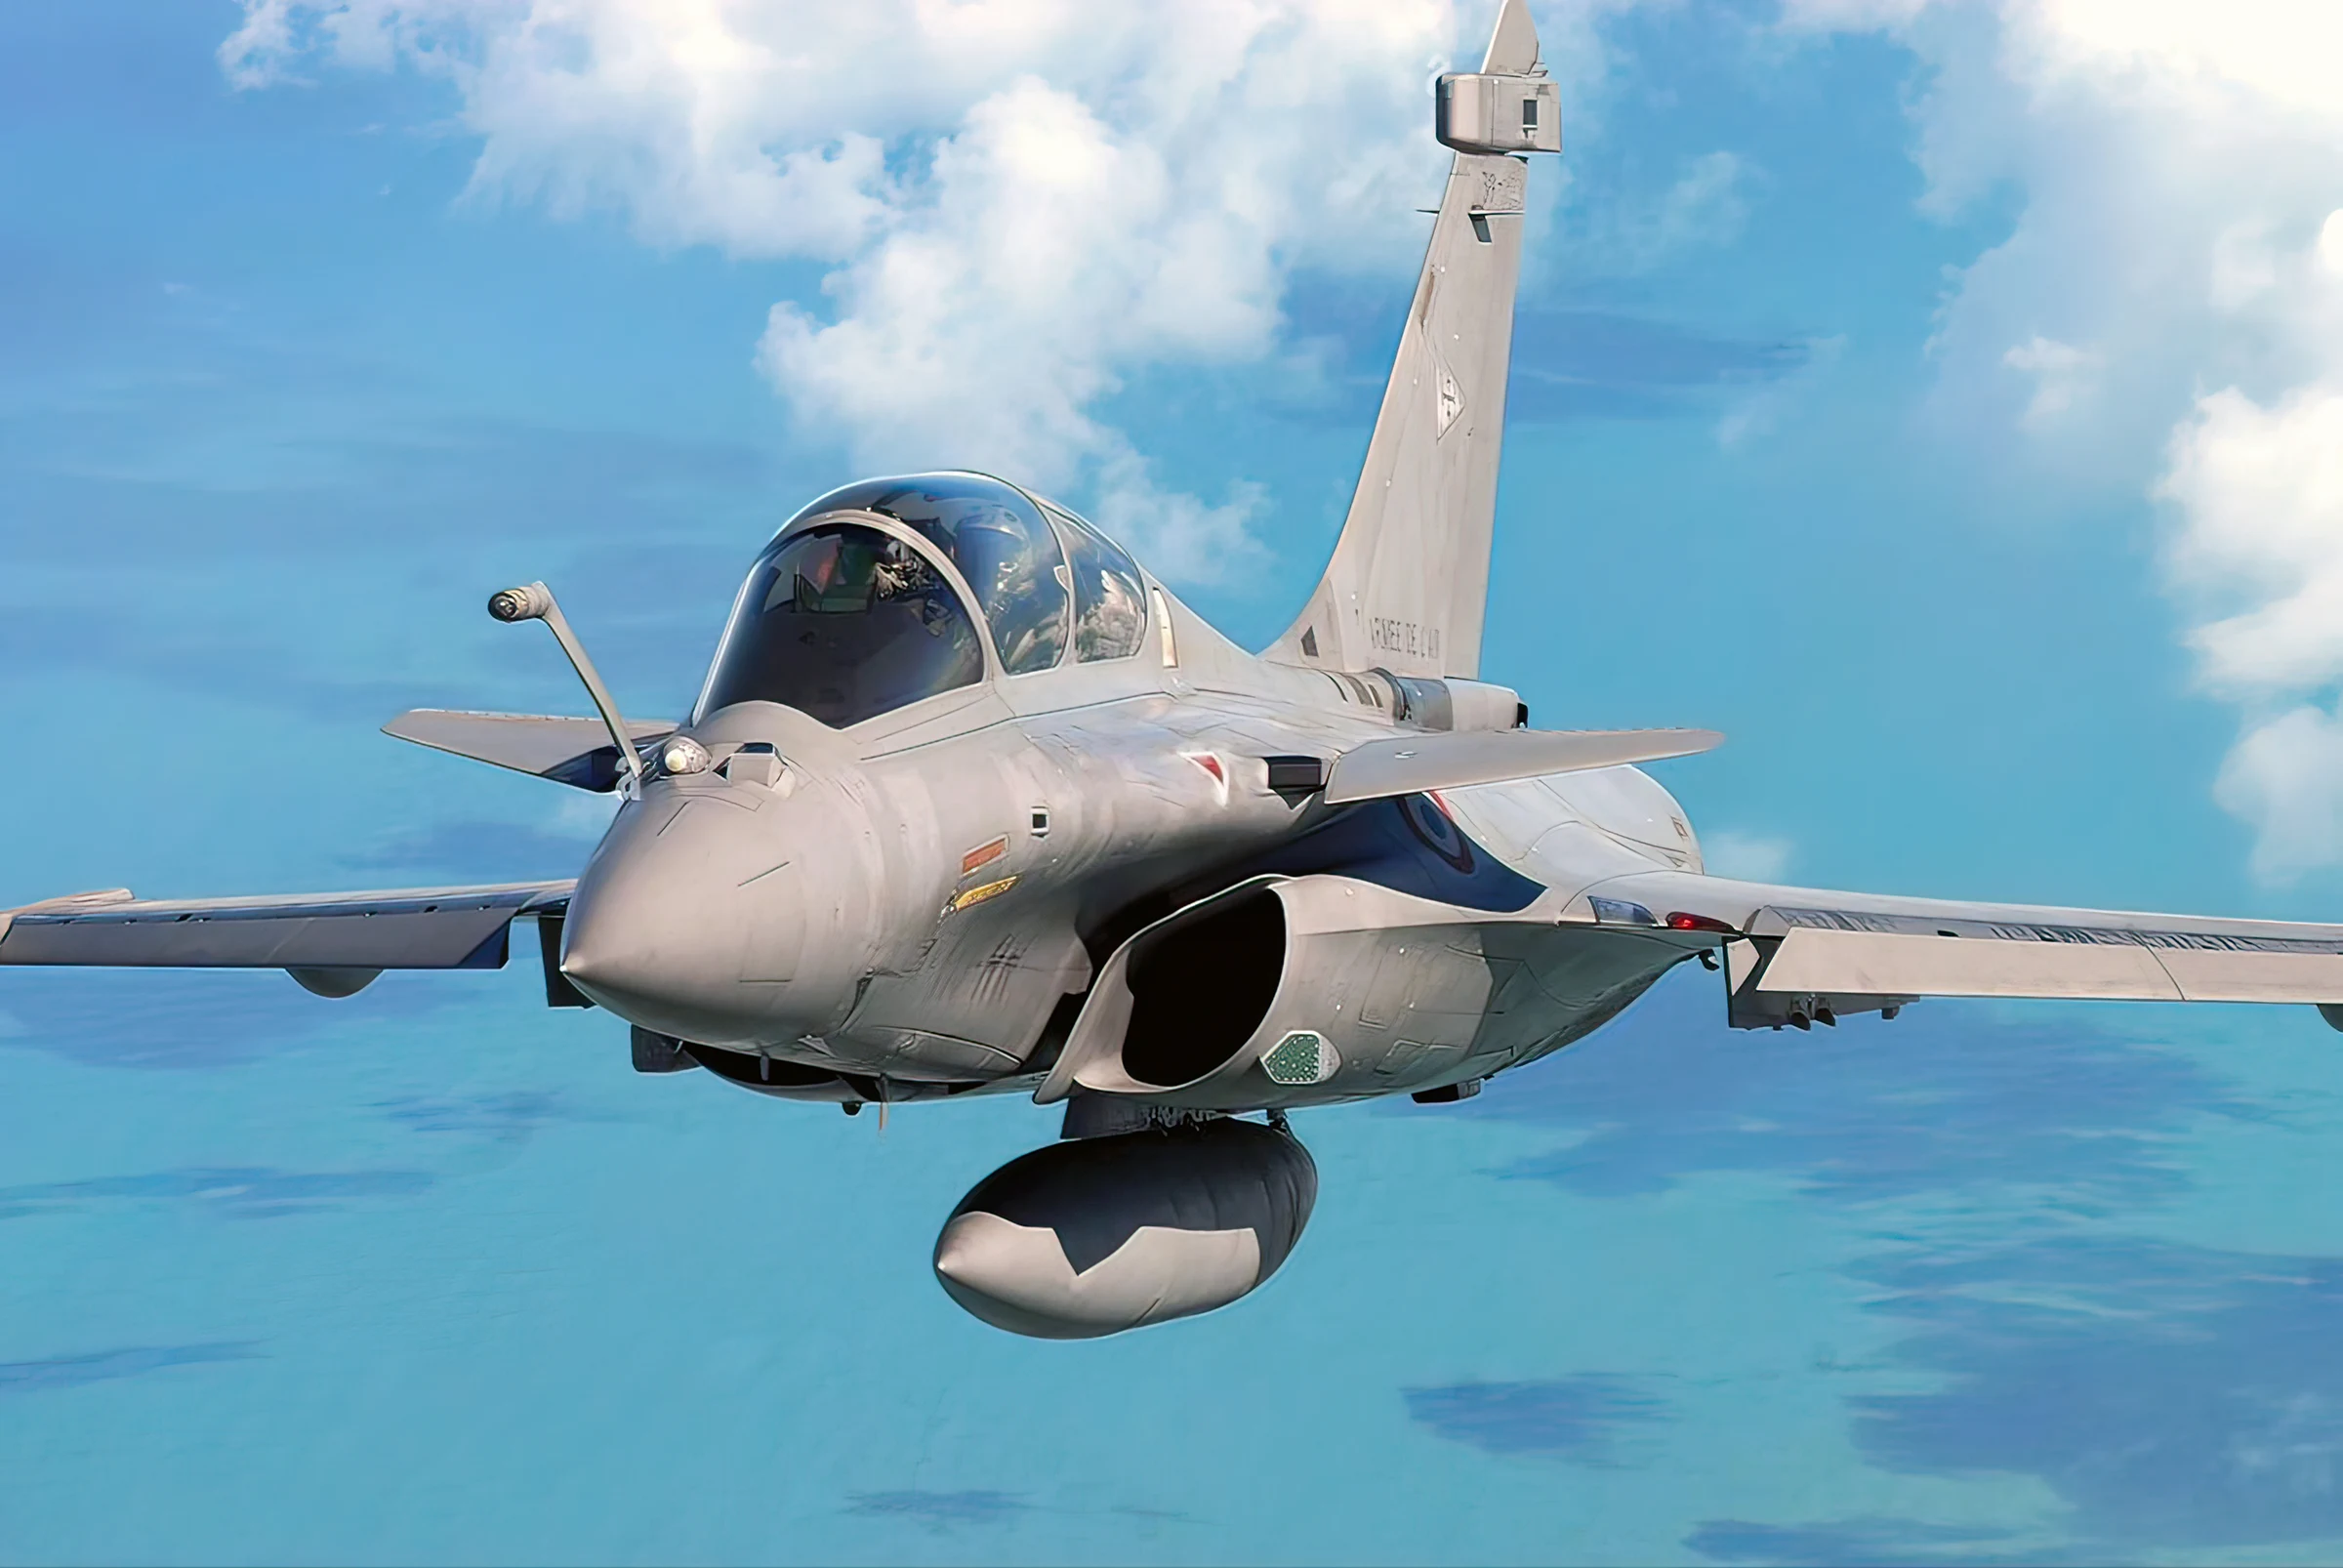 Rafales en posición para reemplazar F-15C/D Eagles en Medio Oriente